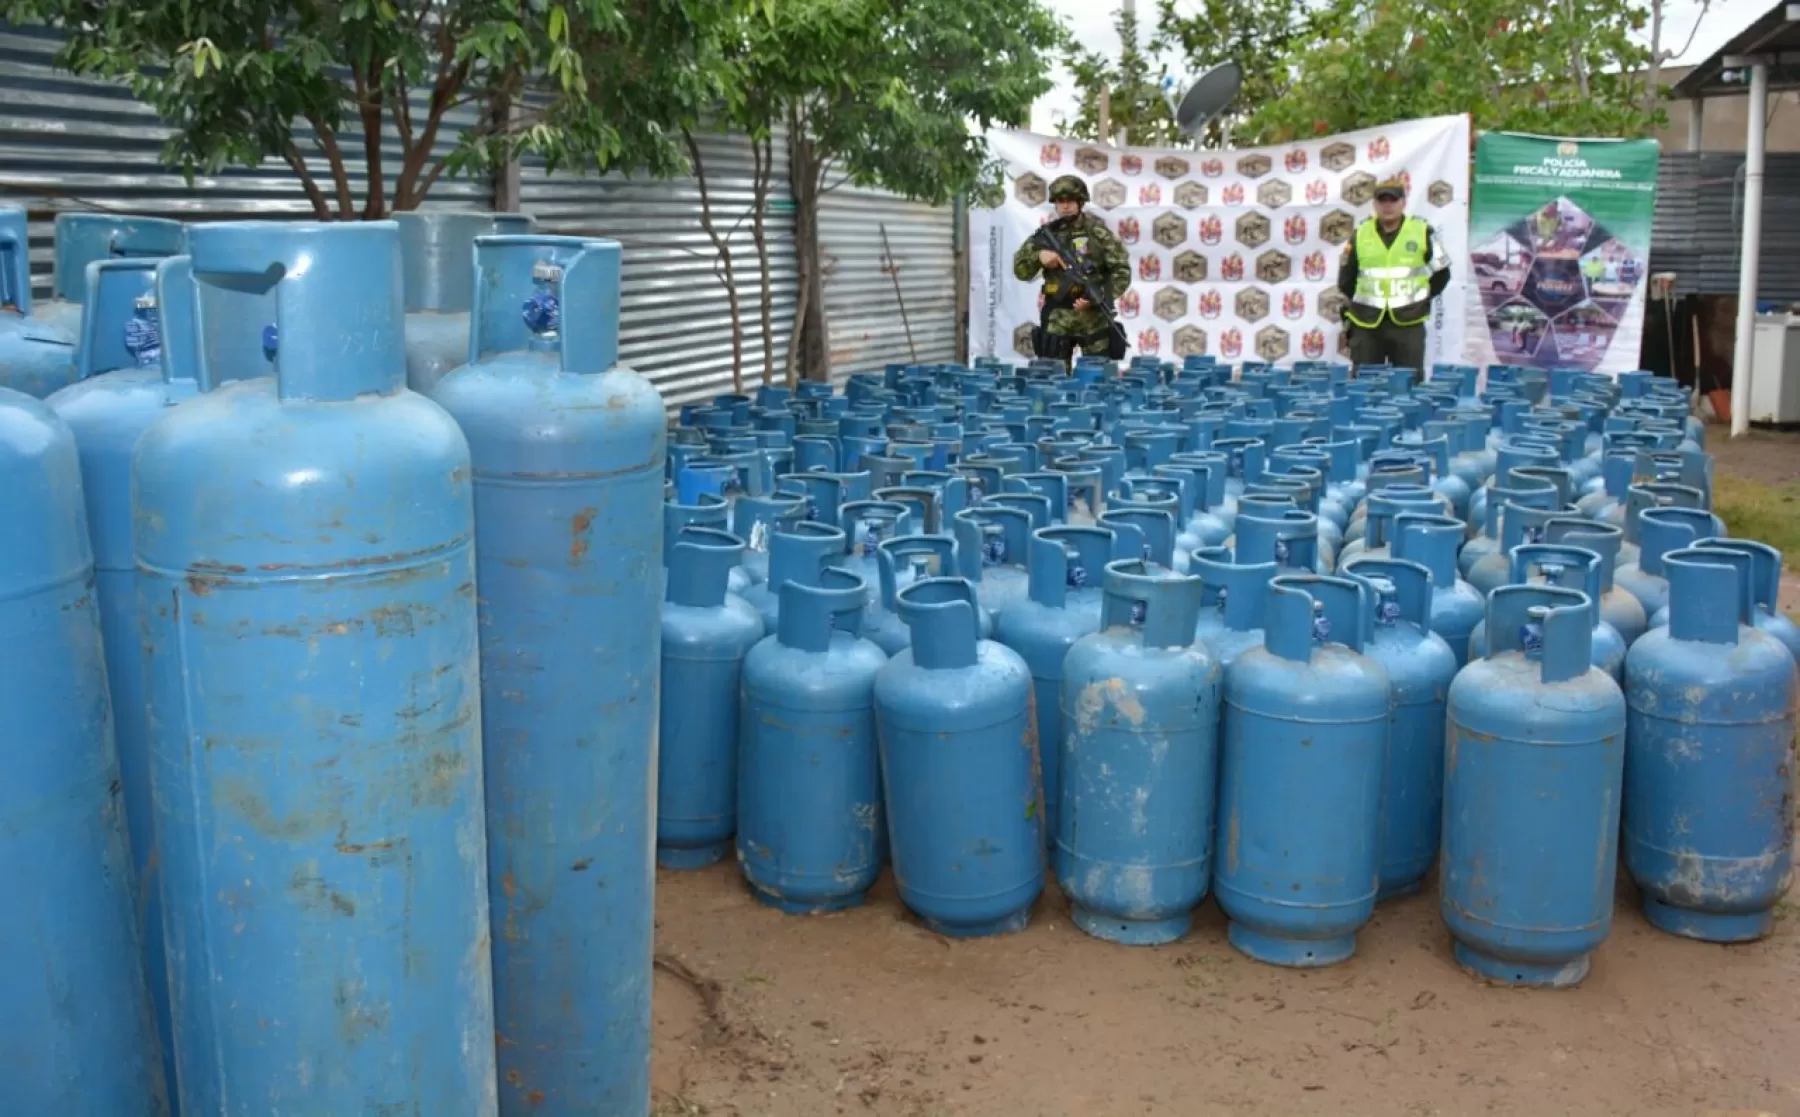 Por incumplir con la normatividad, acerca del reglamento técnico para transporte y manipulación, Ejército incautó 287 cilindros metálicos de gas licuado en el departamento de Arauca.